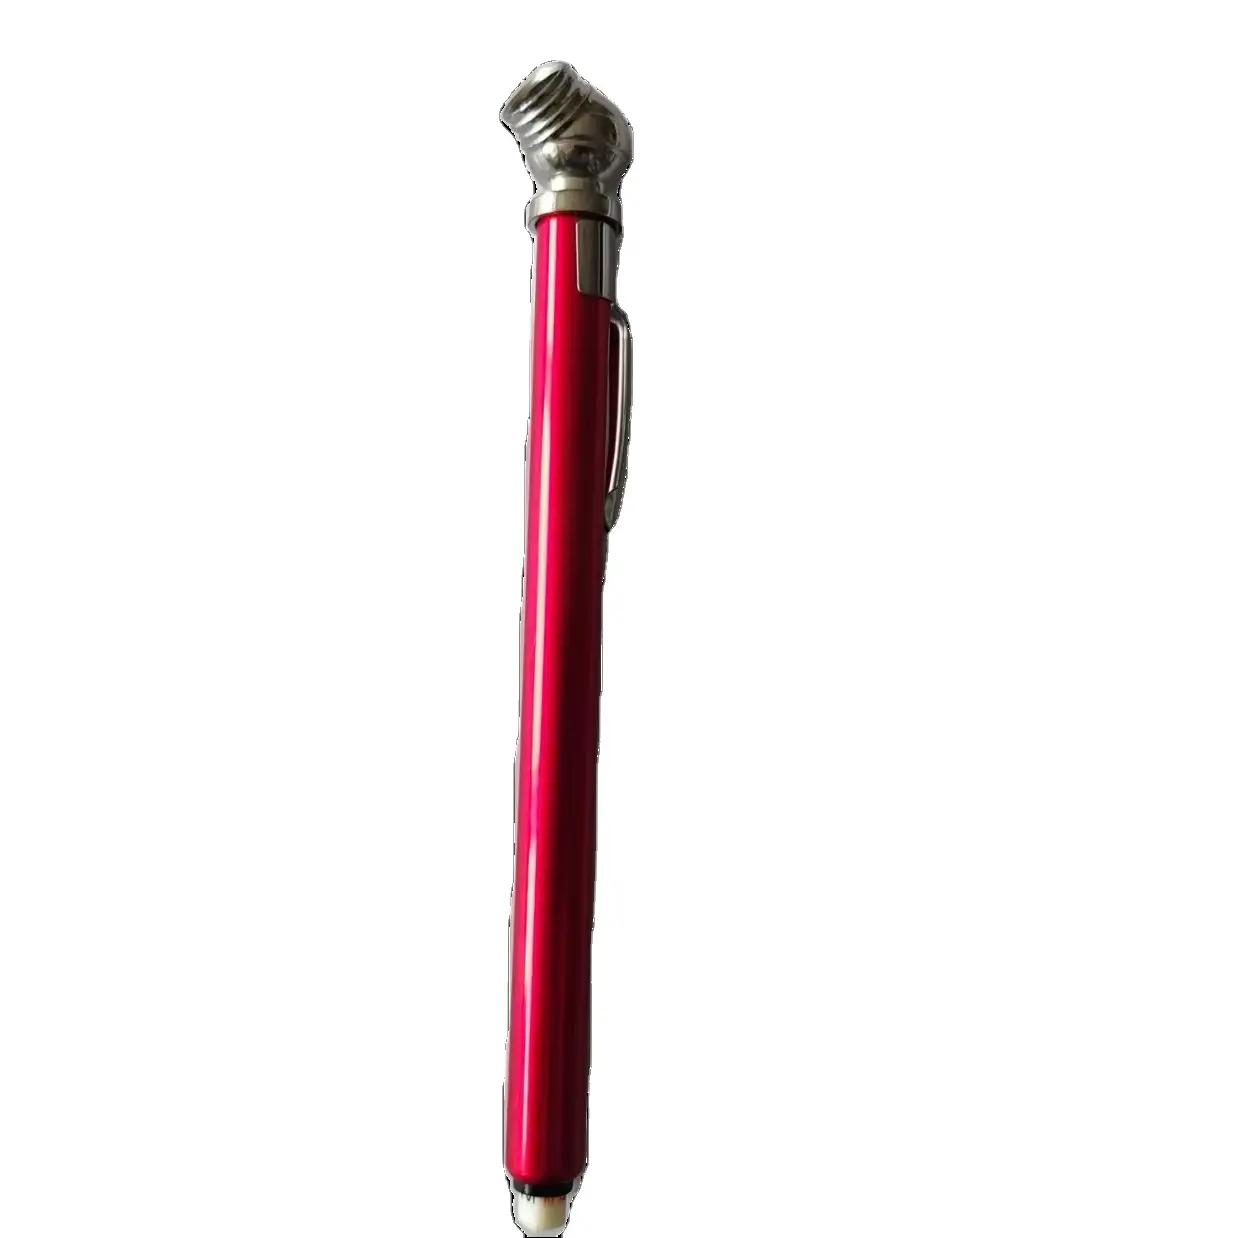 مقياس إطارات صغير أحمر 10-100 رطل لكل بوصة مربعة مقياس نفايات للترويج 4 جوانب ABS مؤشر إطارات أدوات ألمنيوم مشبك قلم